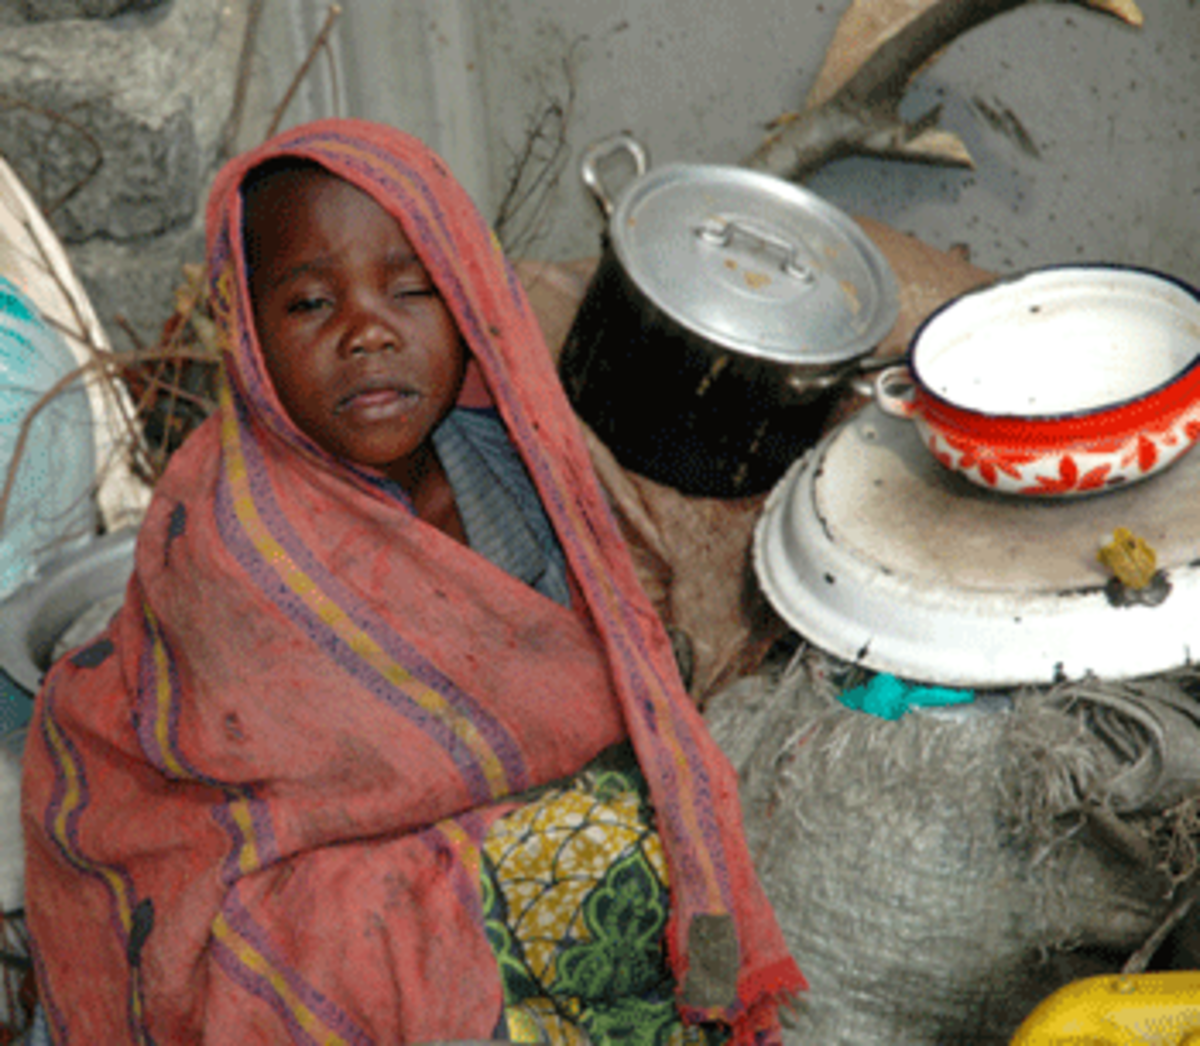 malnourished congolese child